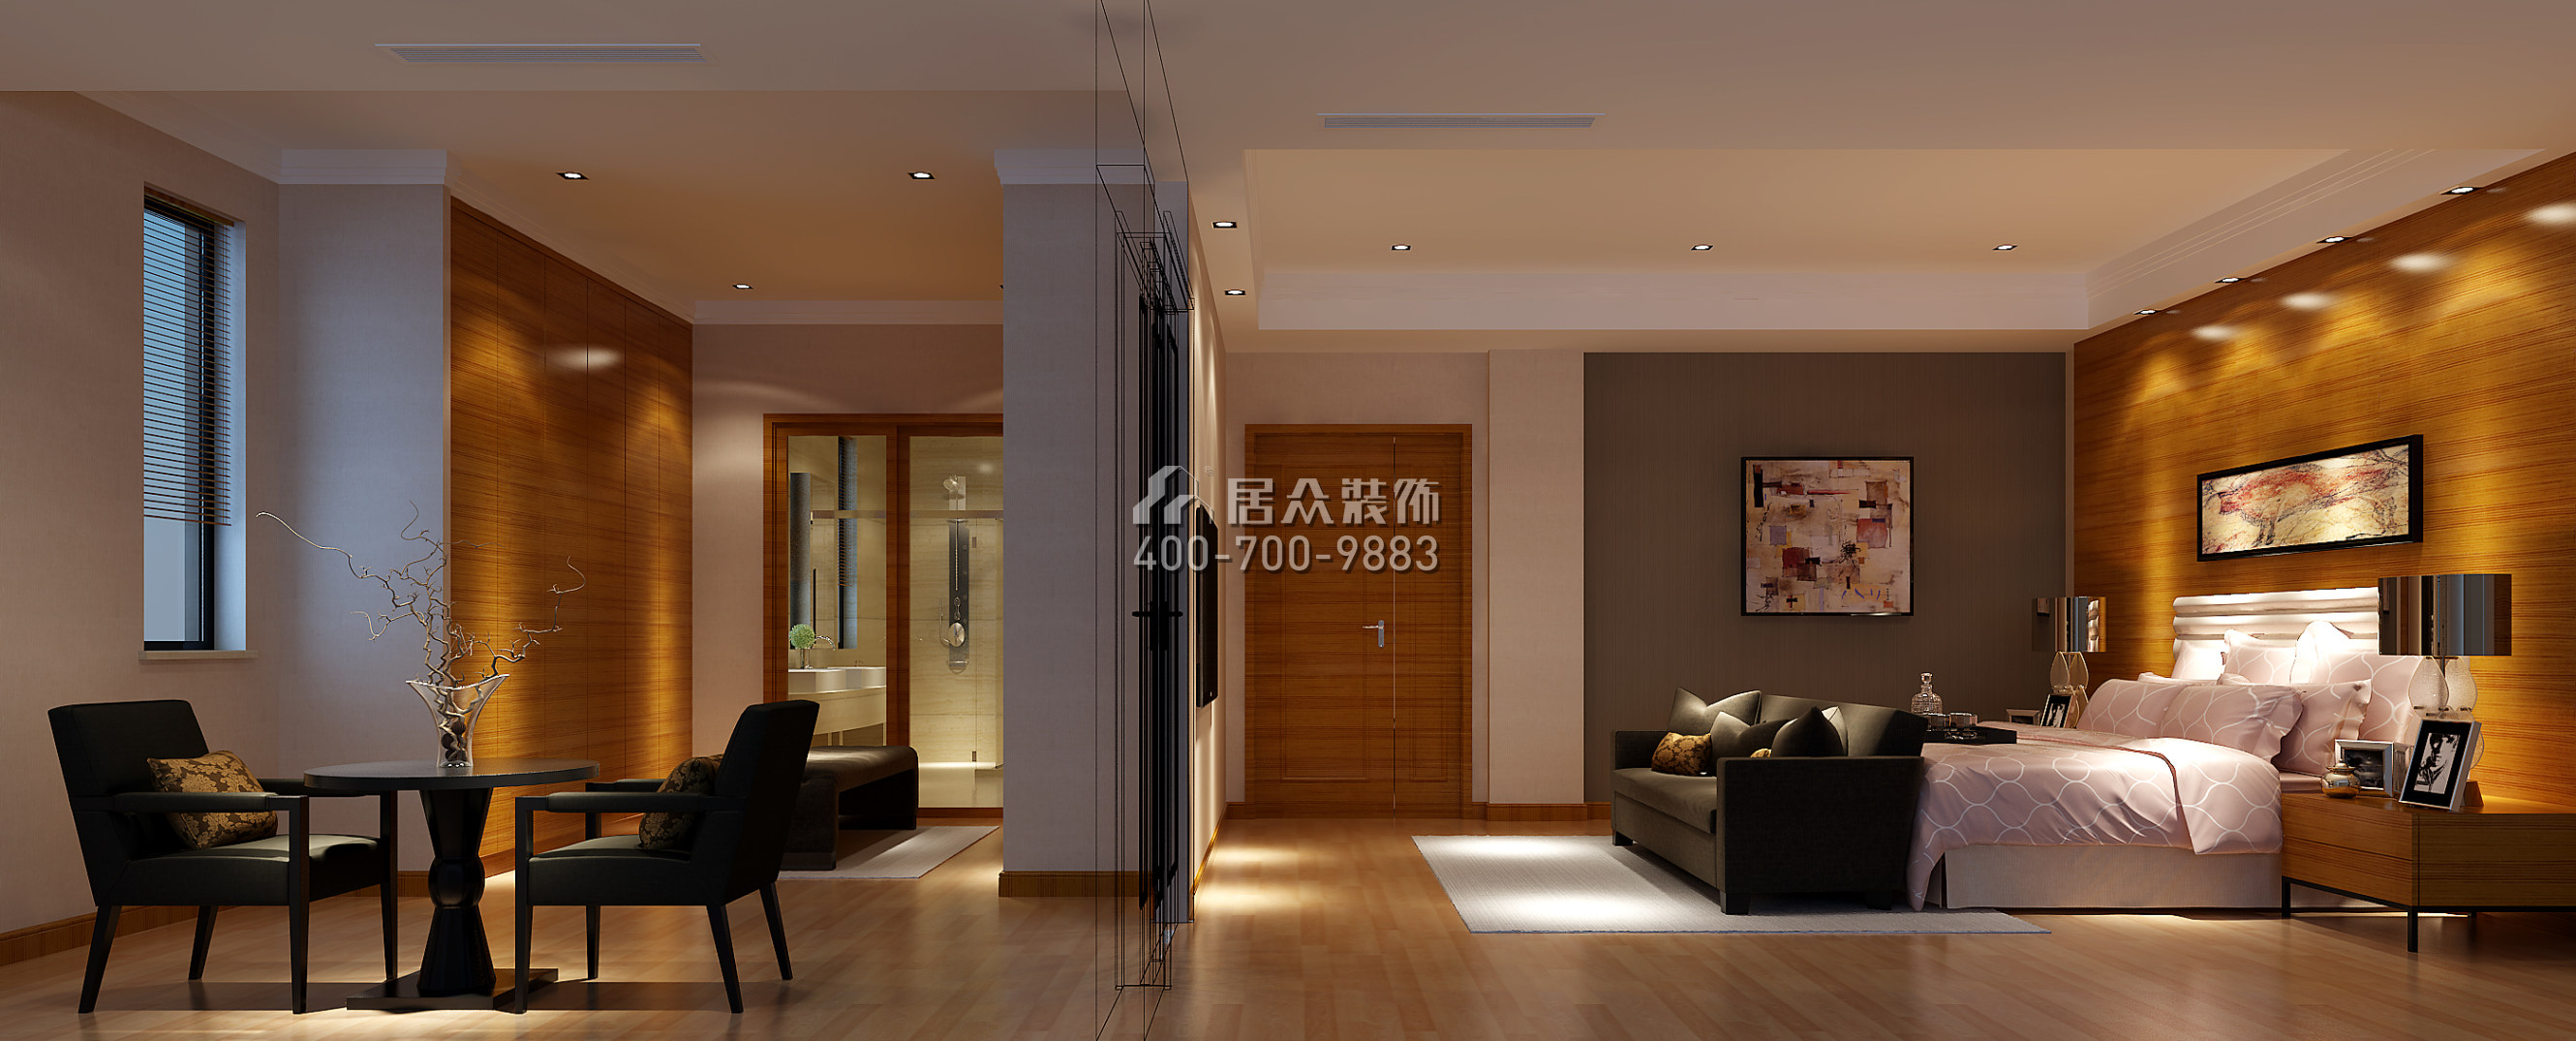 东部华侨城天麓1200平方米现代简约风格别墅户型卧室装修效果图